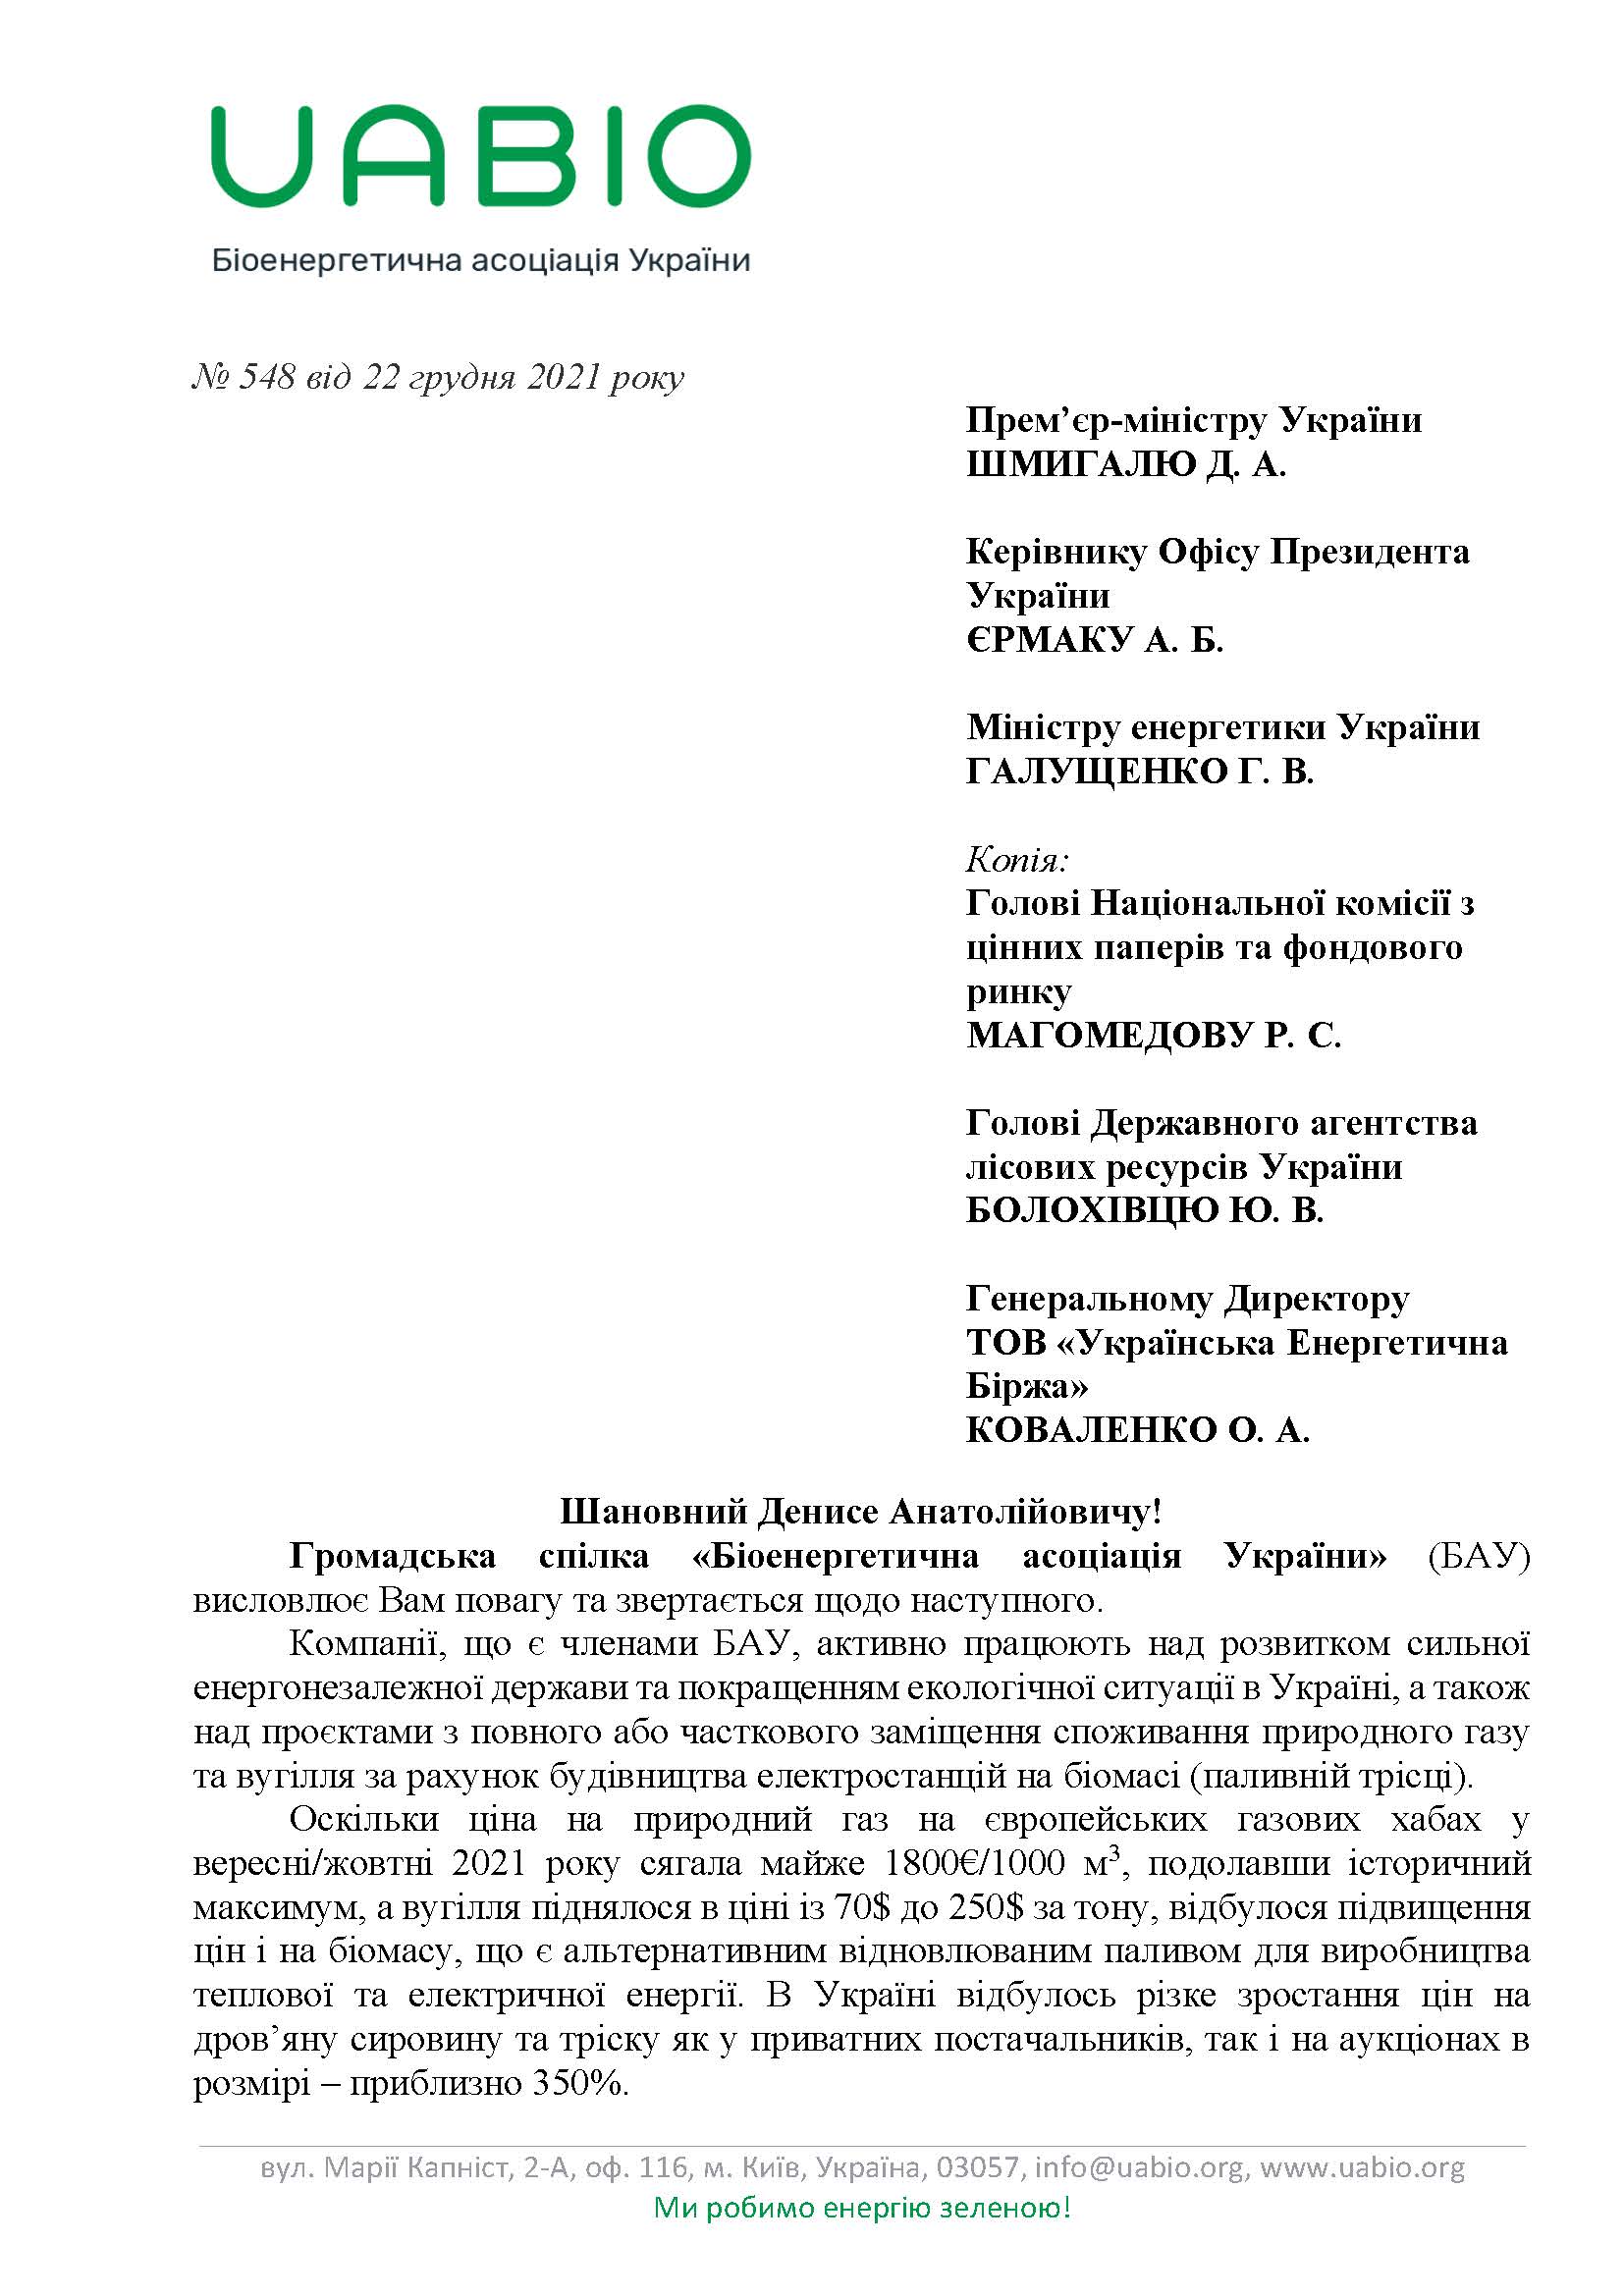 Лист №548 Біоенергетичної асоціації України